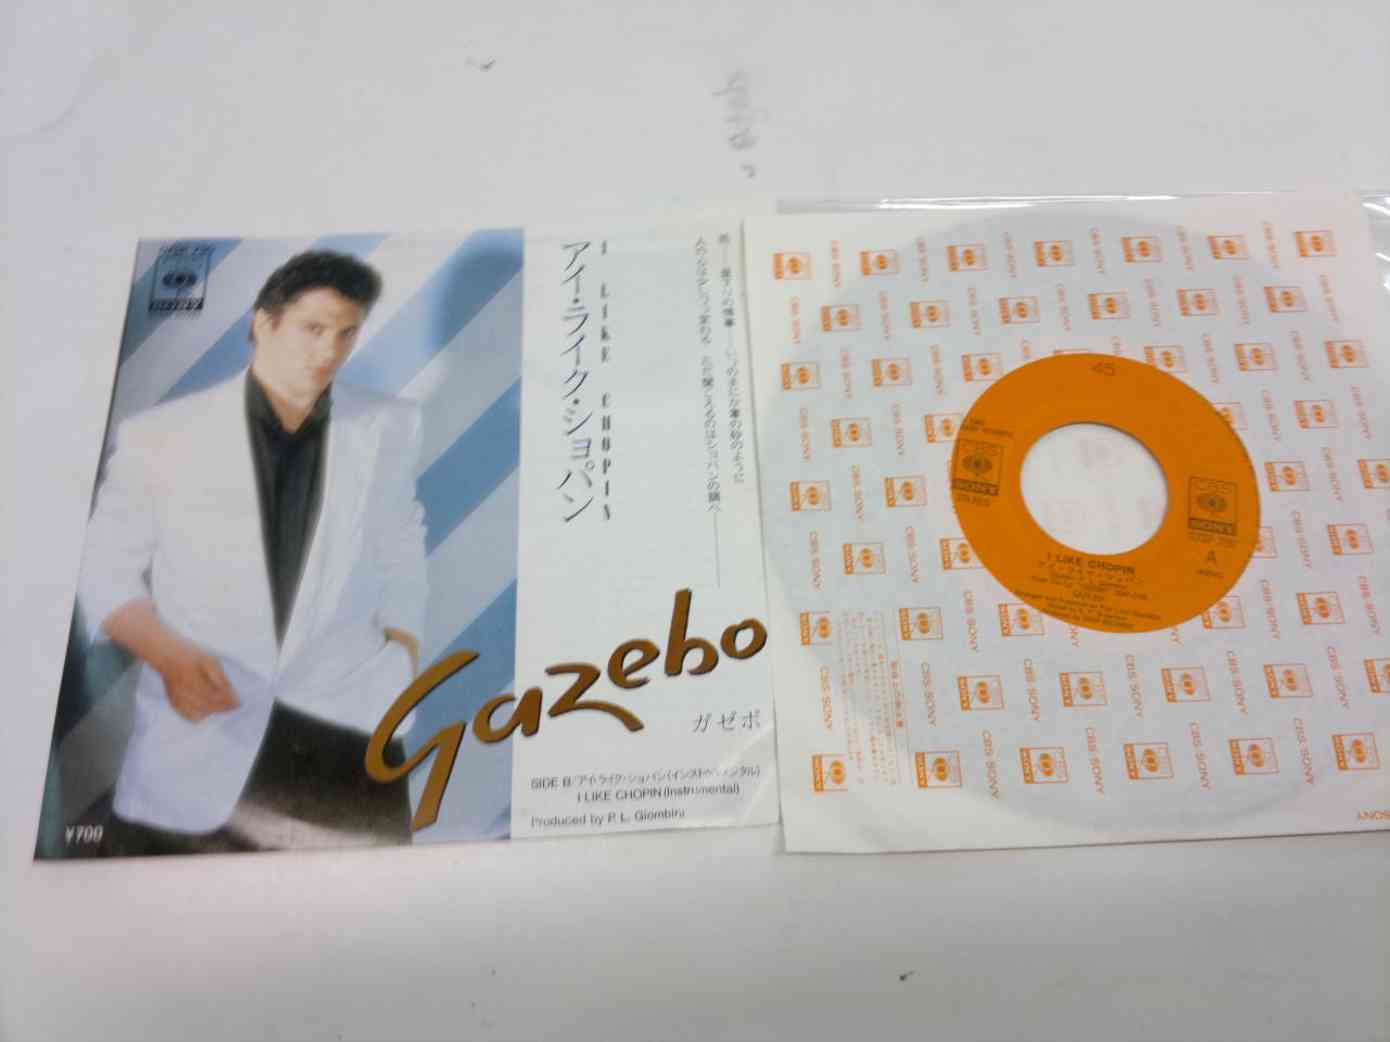 GAZEBO - I LIKE CHOPIN - JAPAN